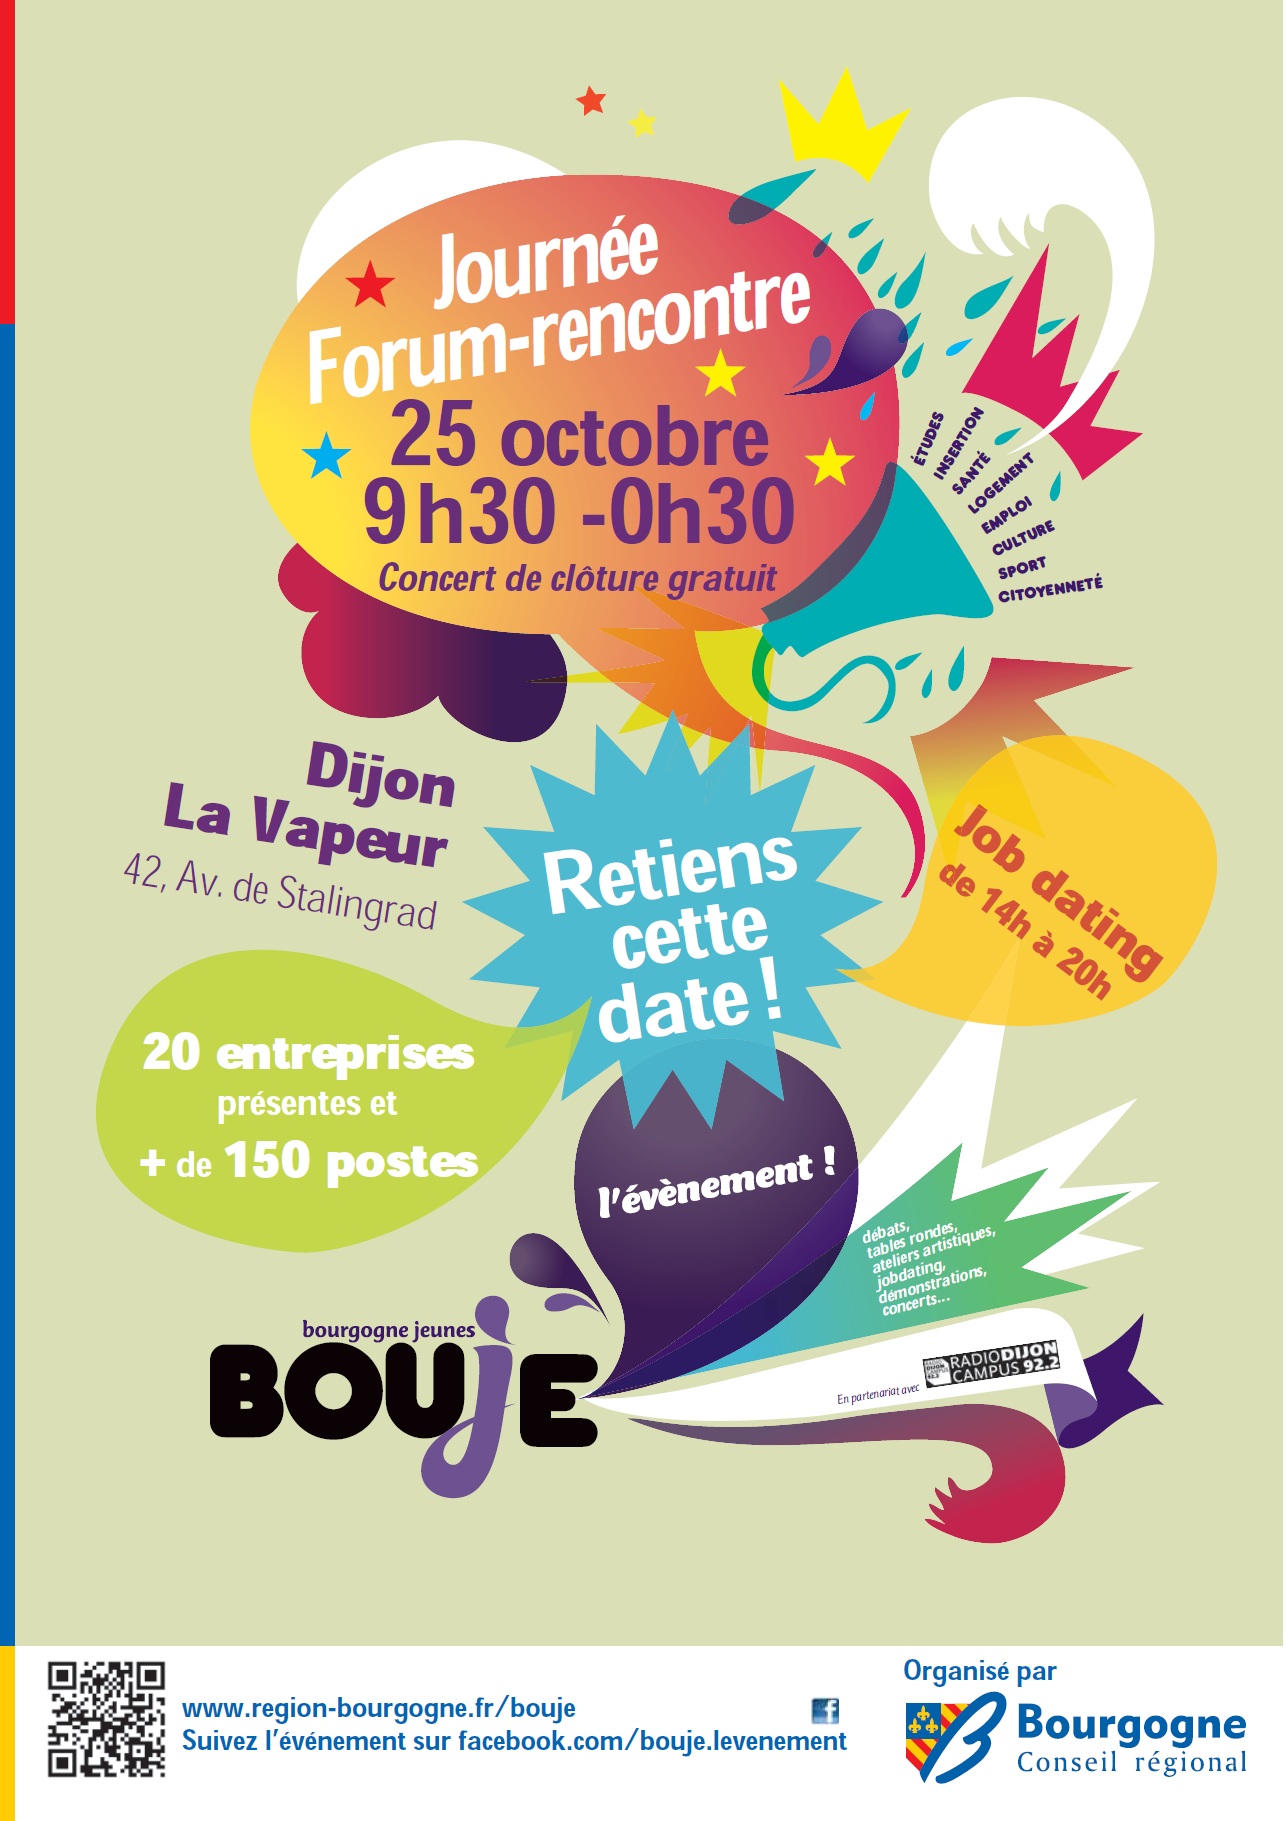 Conseil Régional de Bourgogne recrute Le 25 octobre Journée Forum-Rencontre de 09h30 à 0h30